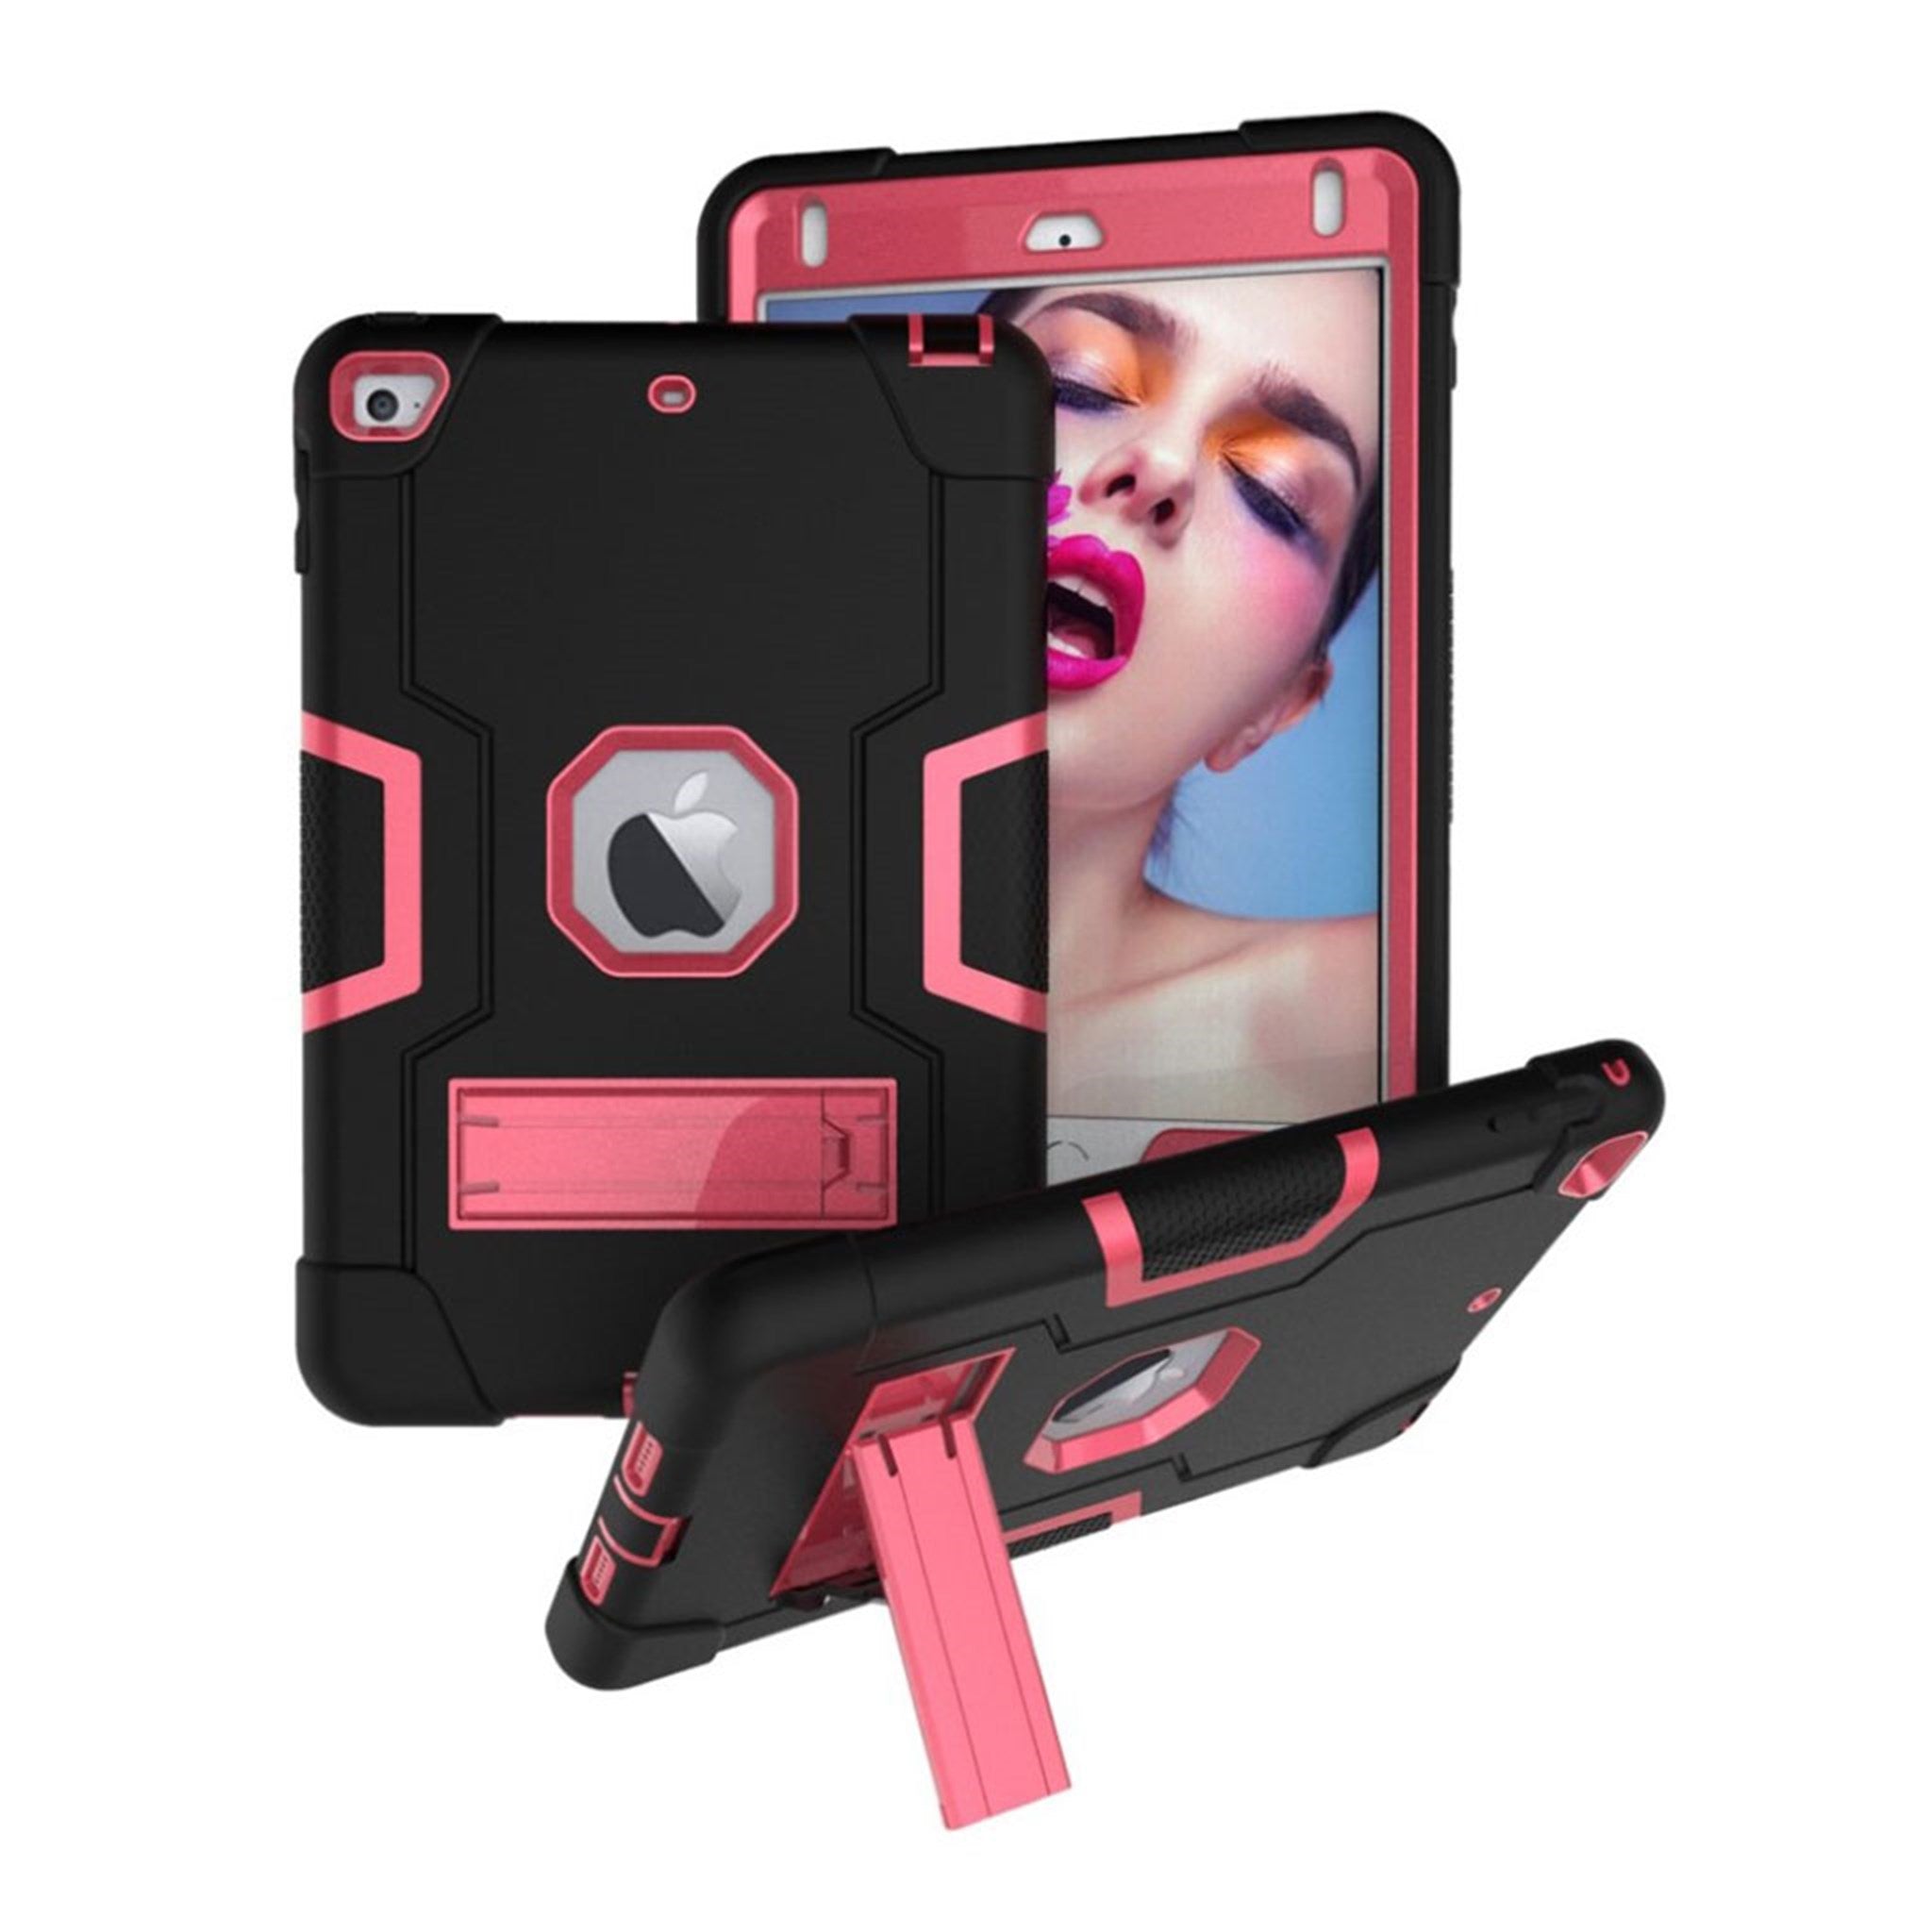 iPad Mini (2019) shockproof hybrid case - Black / Rose